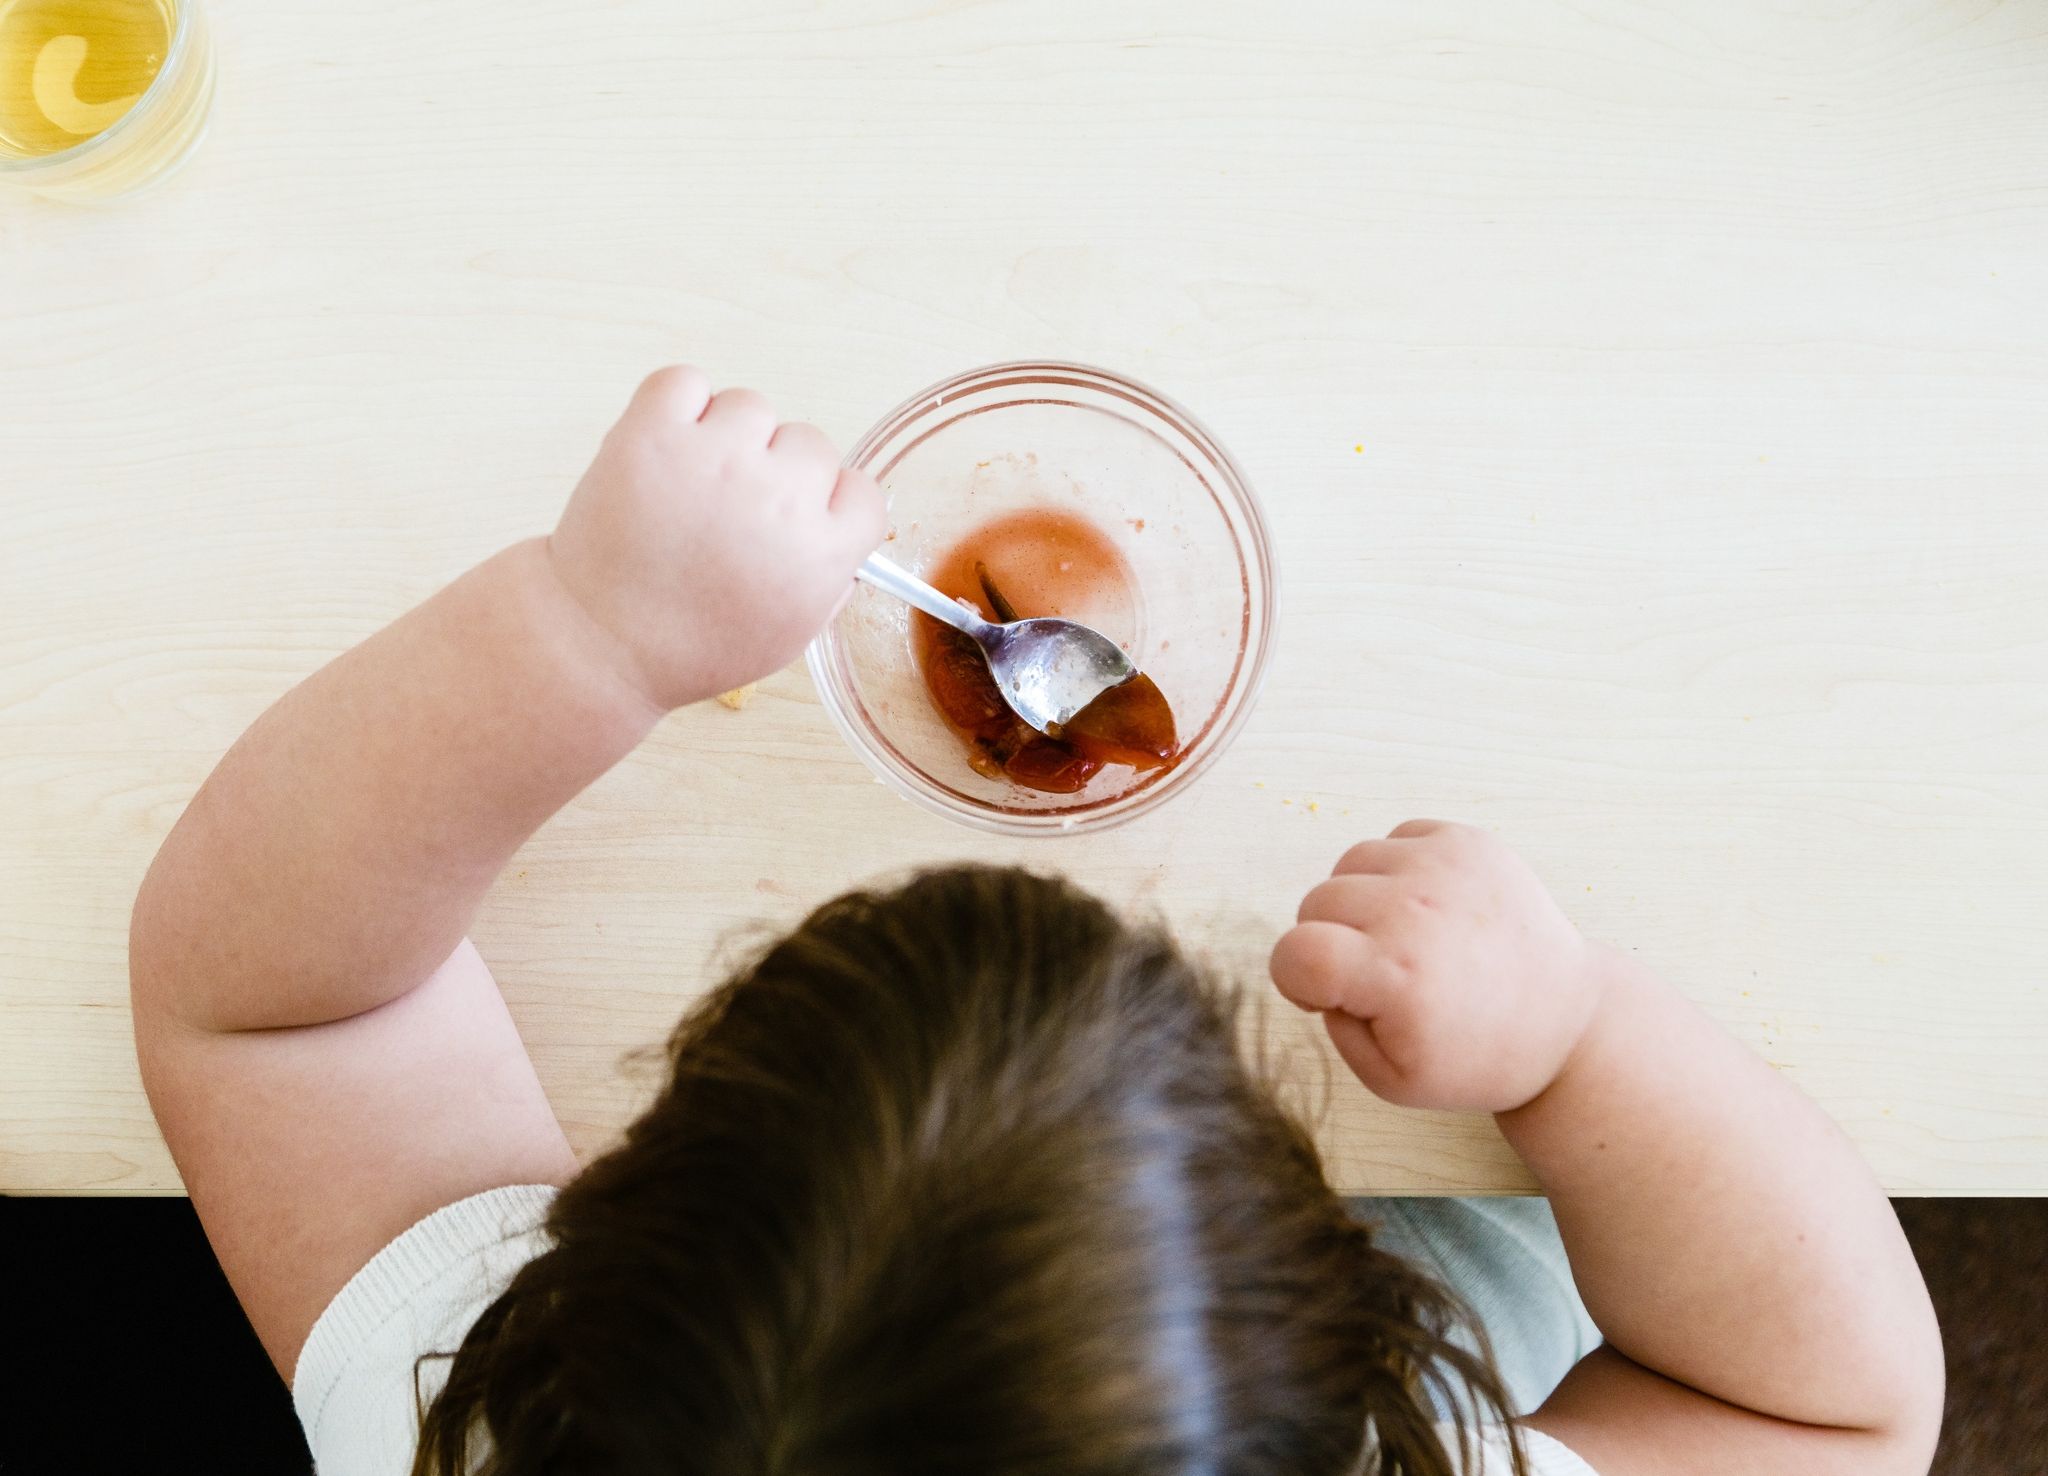 Weniger Zucker, mehr Bewegung: Wenn klar ist, dass beim Kind eine Fettleber vorliegt, ist eine Ernährungsumstellung wichtig.